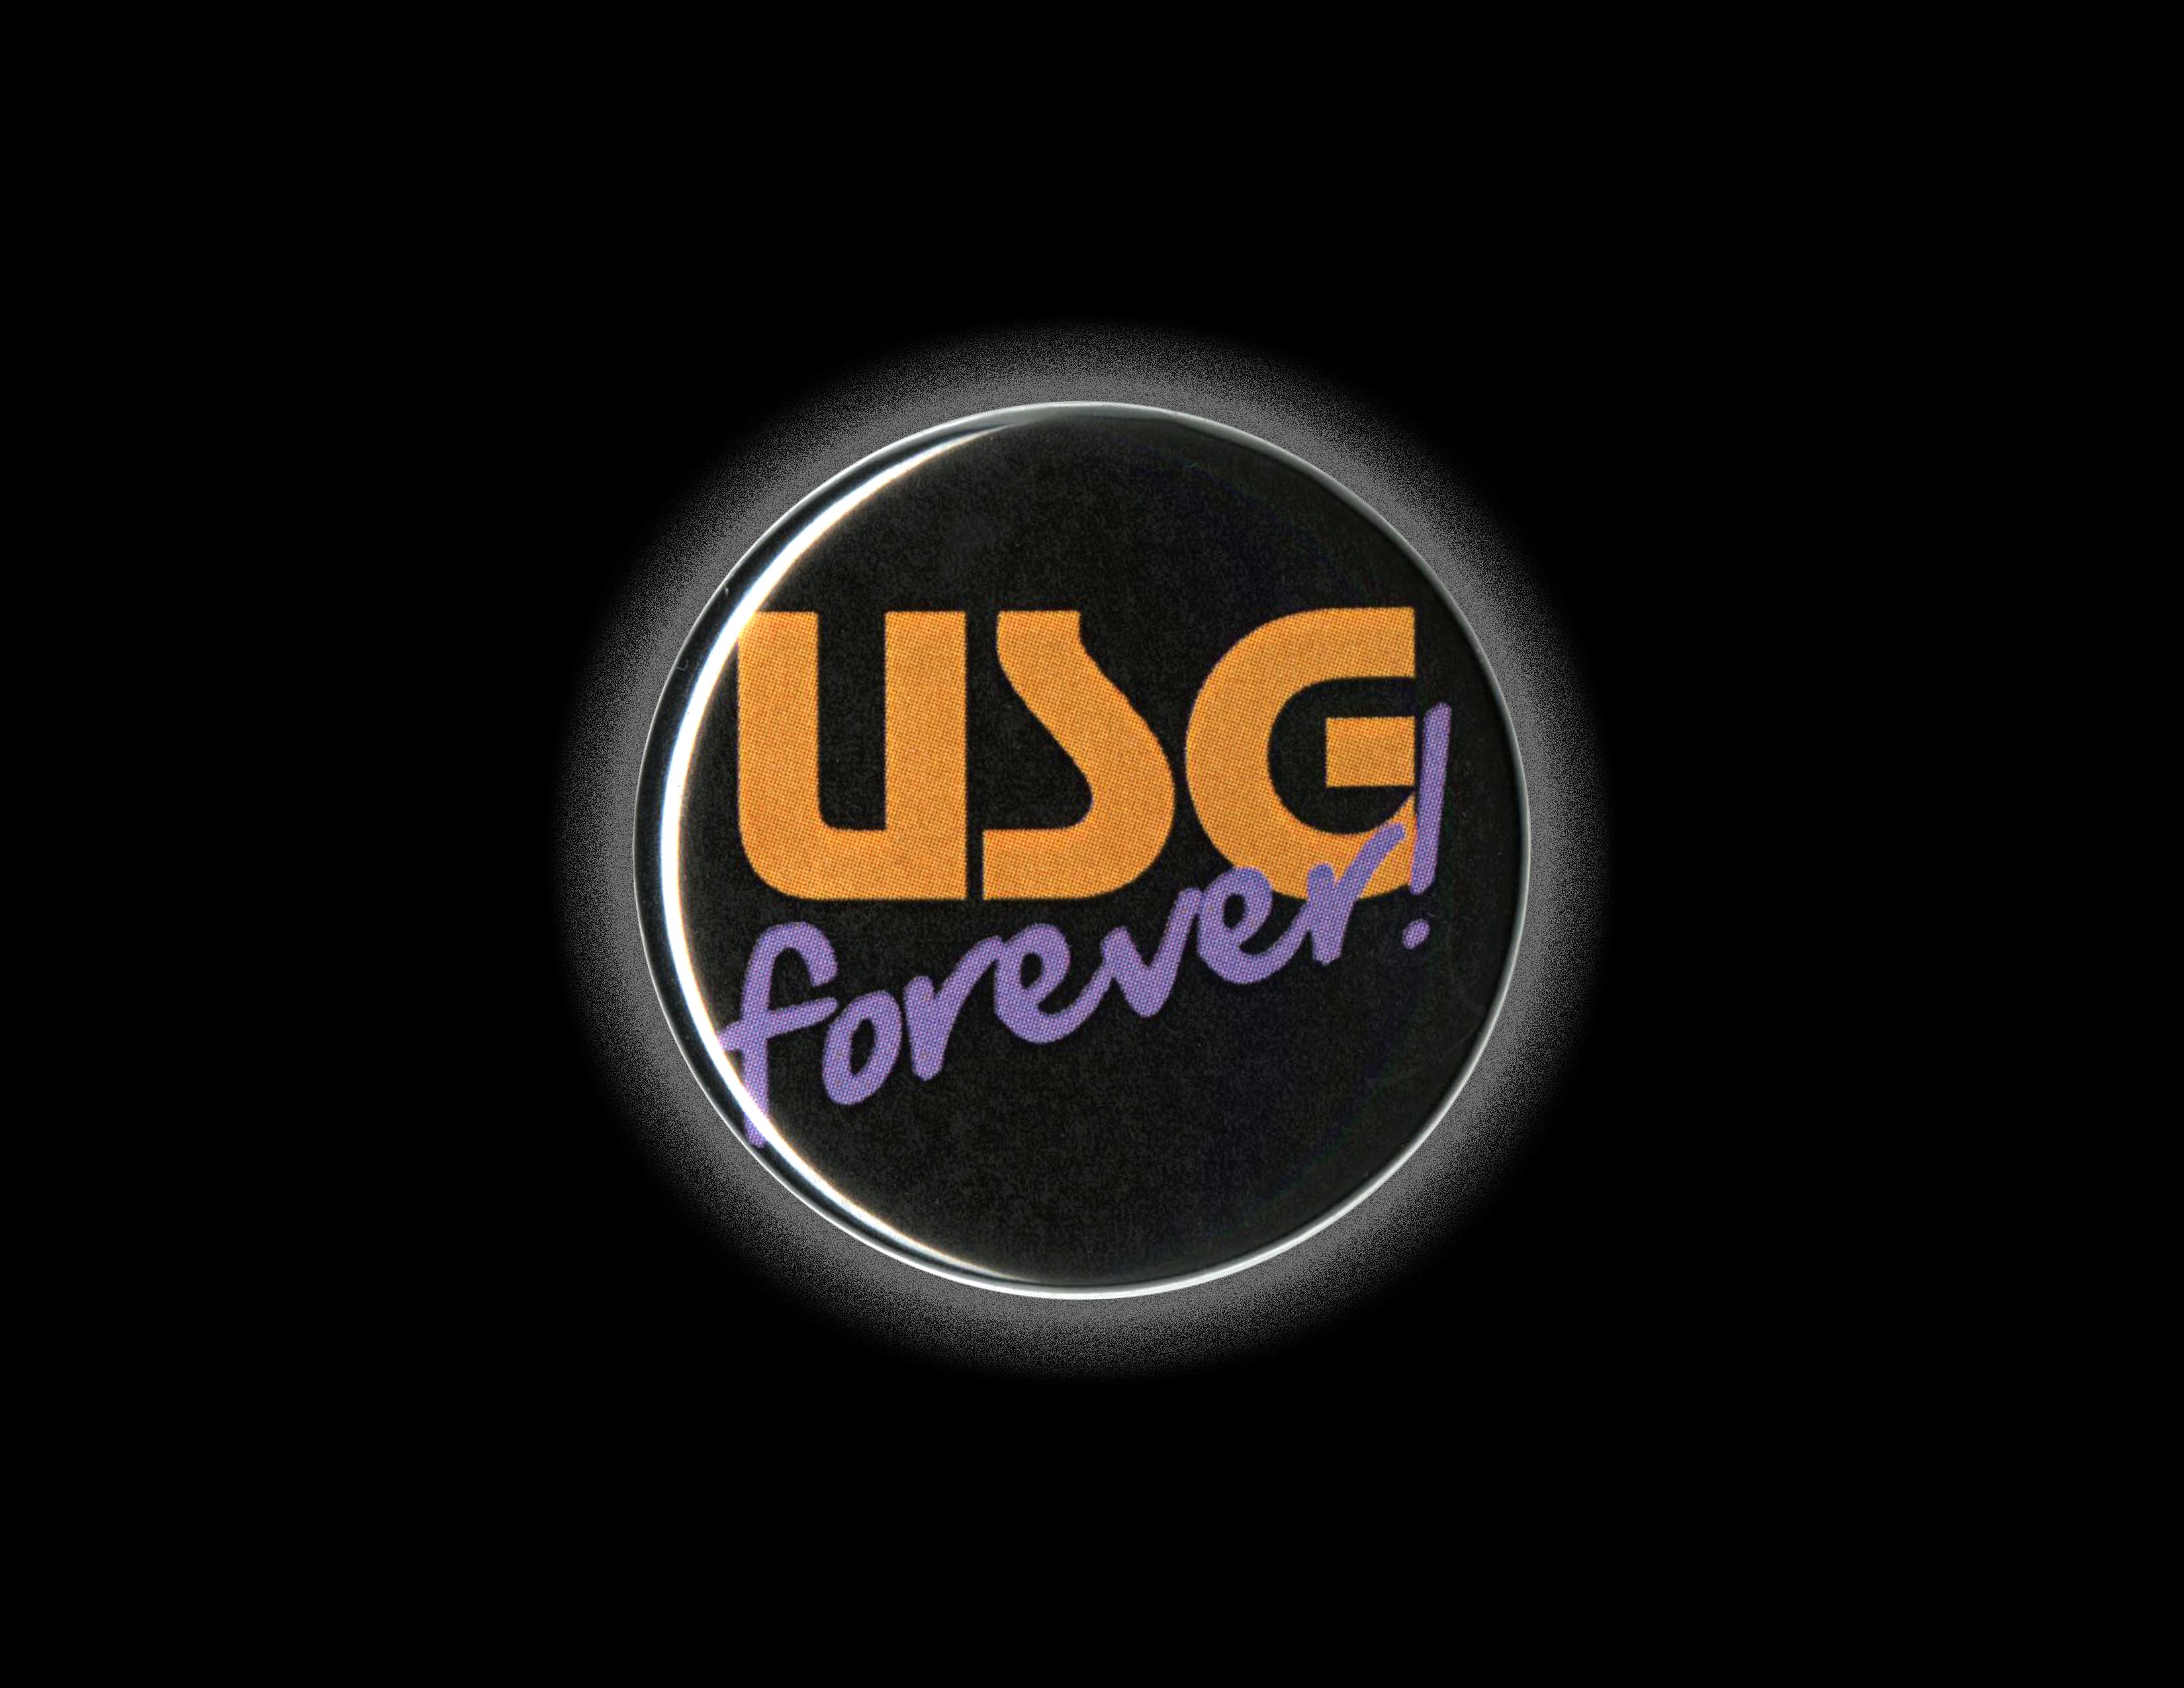 logo USG Forever